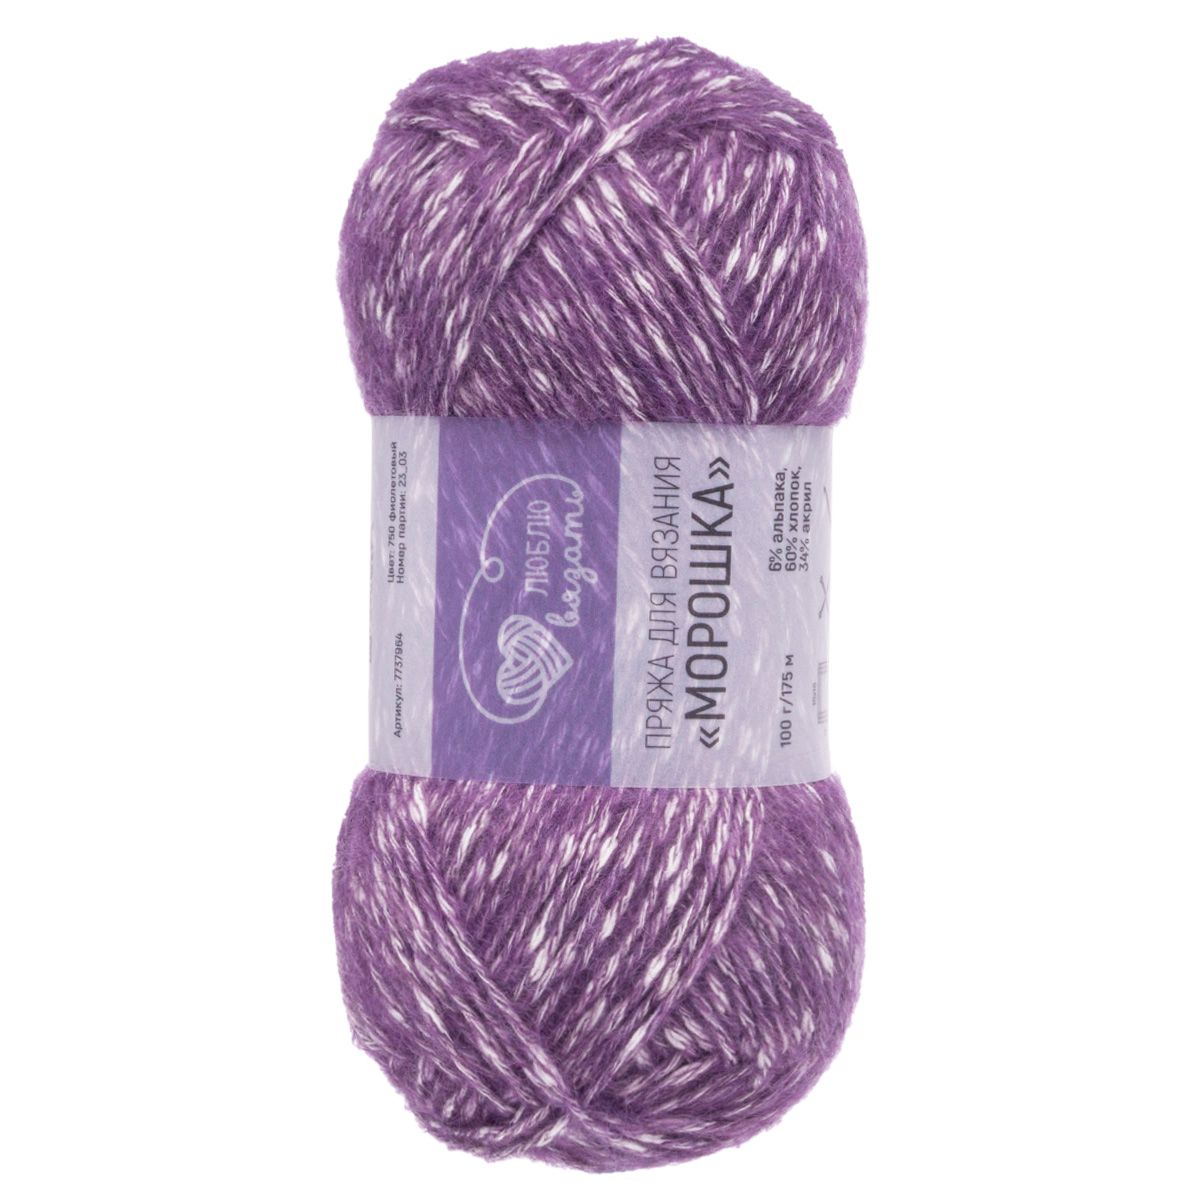 Пряжа для вязания Люблю вязать Морошка, 100г, 175м (750 фиолетовый), 3 мотка